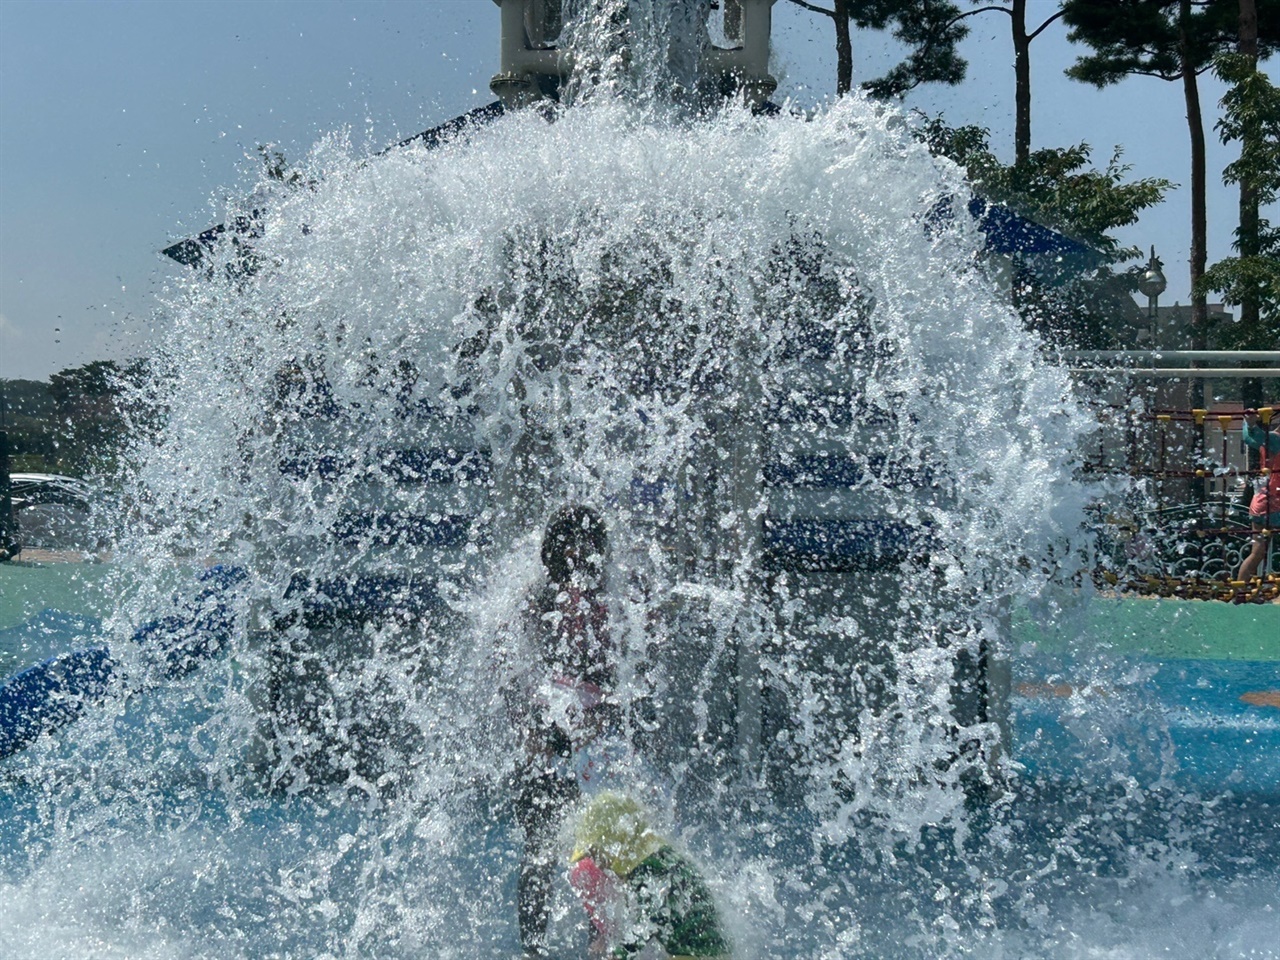 홍성군 남장리 어린이공원에 마련된 물놀이장에서 어린이들이 물놀이를 즐기고 있다. 